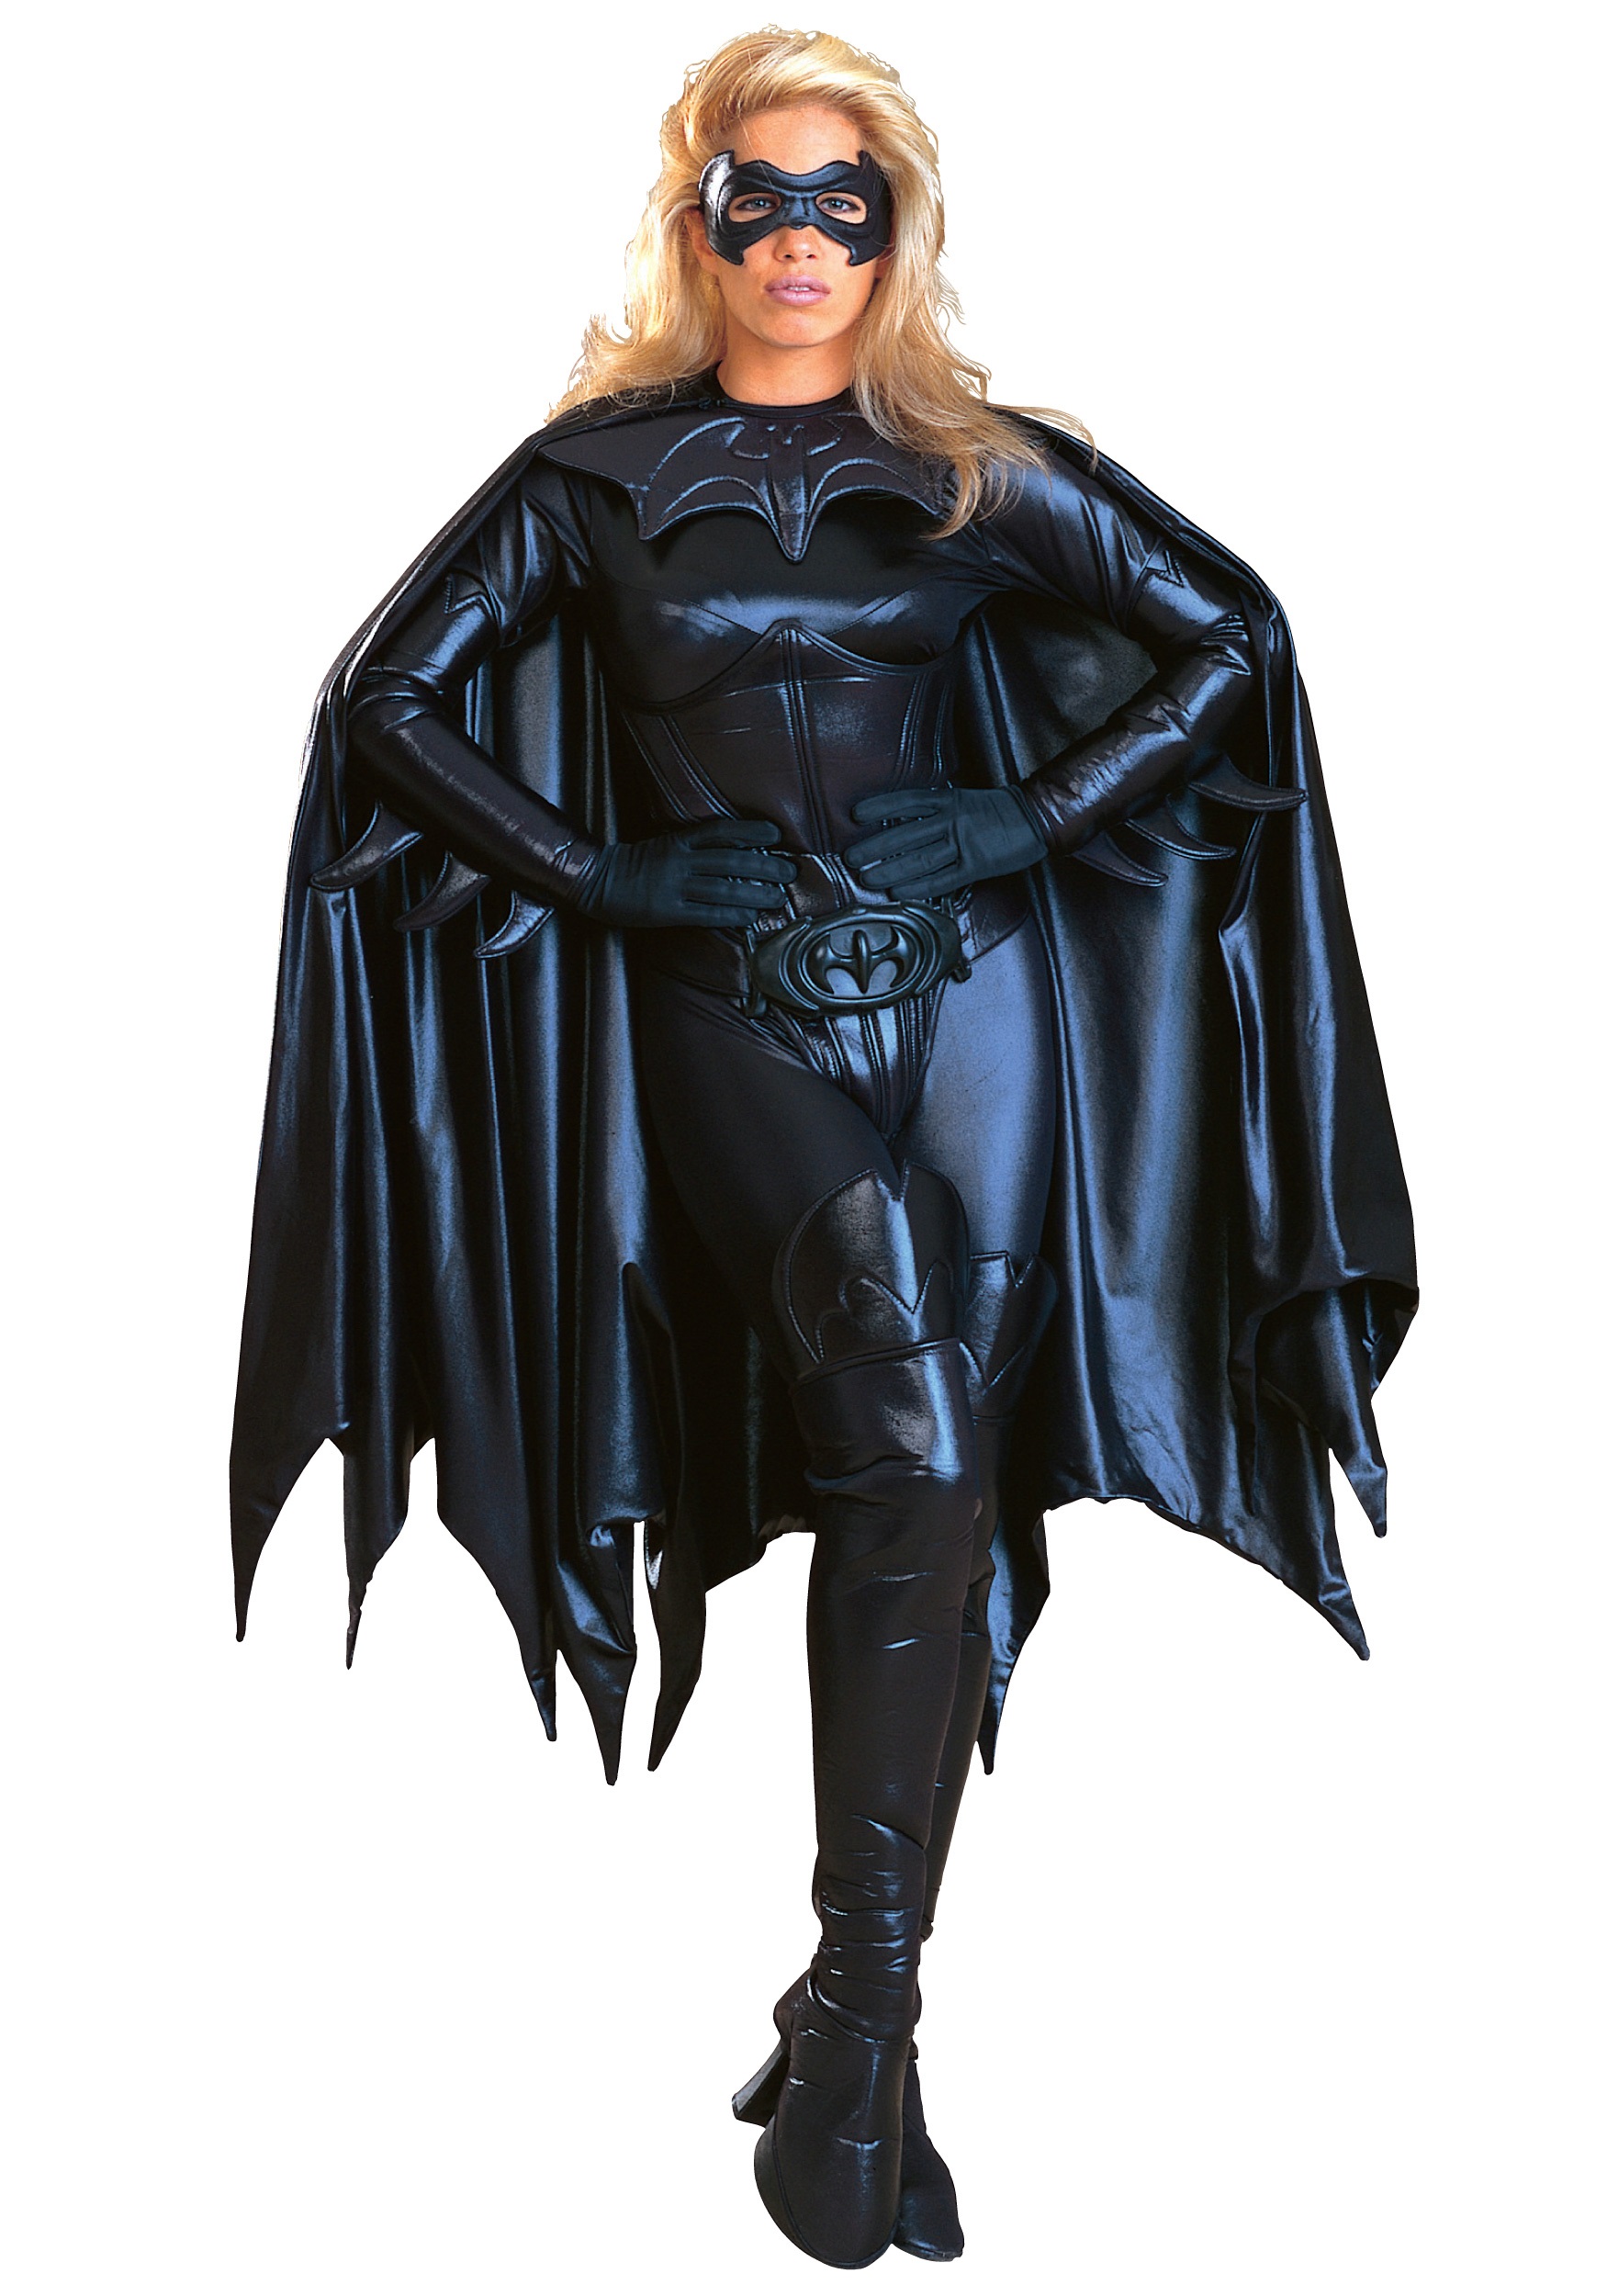 Fantasia De Batgirl Adult Batgirl Costume